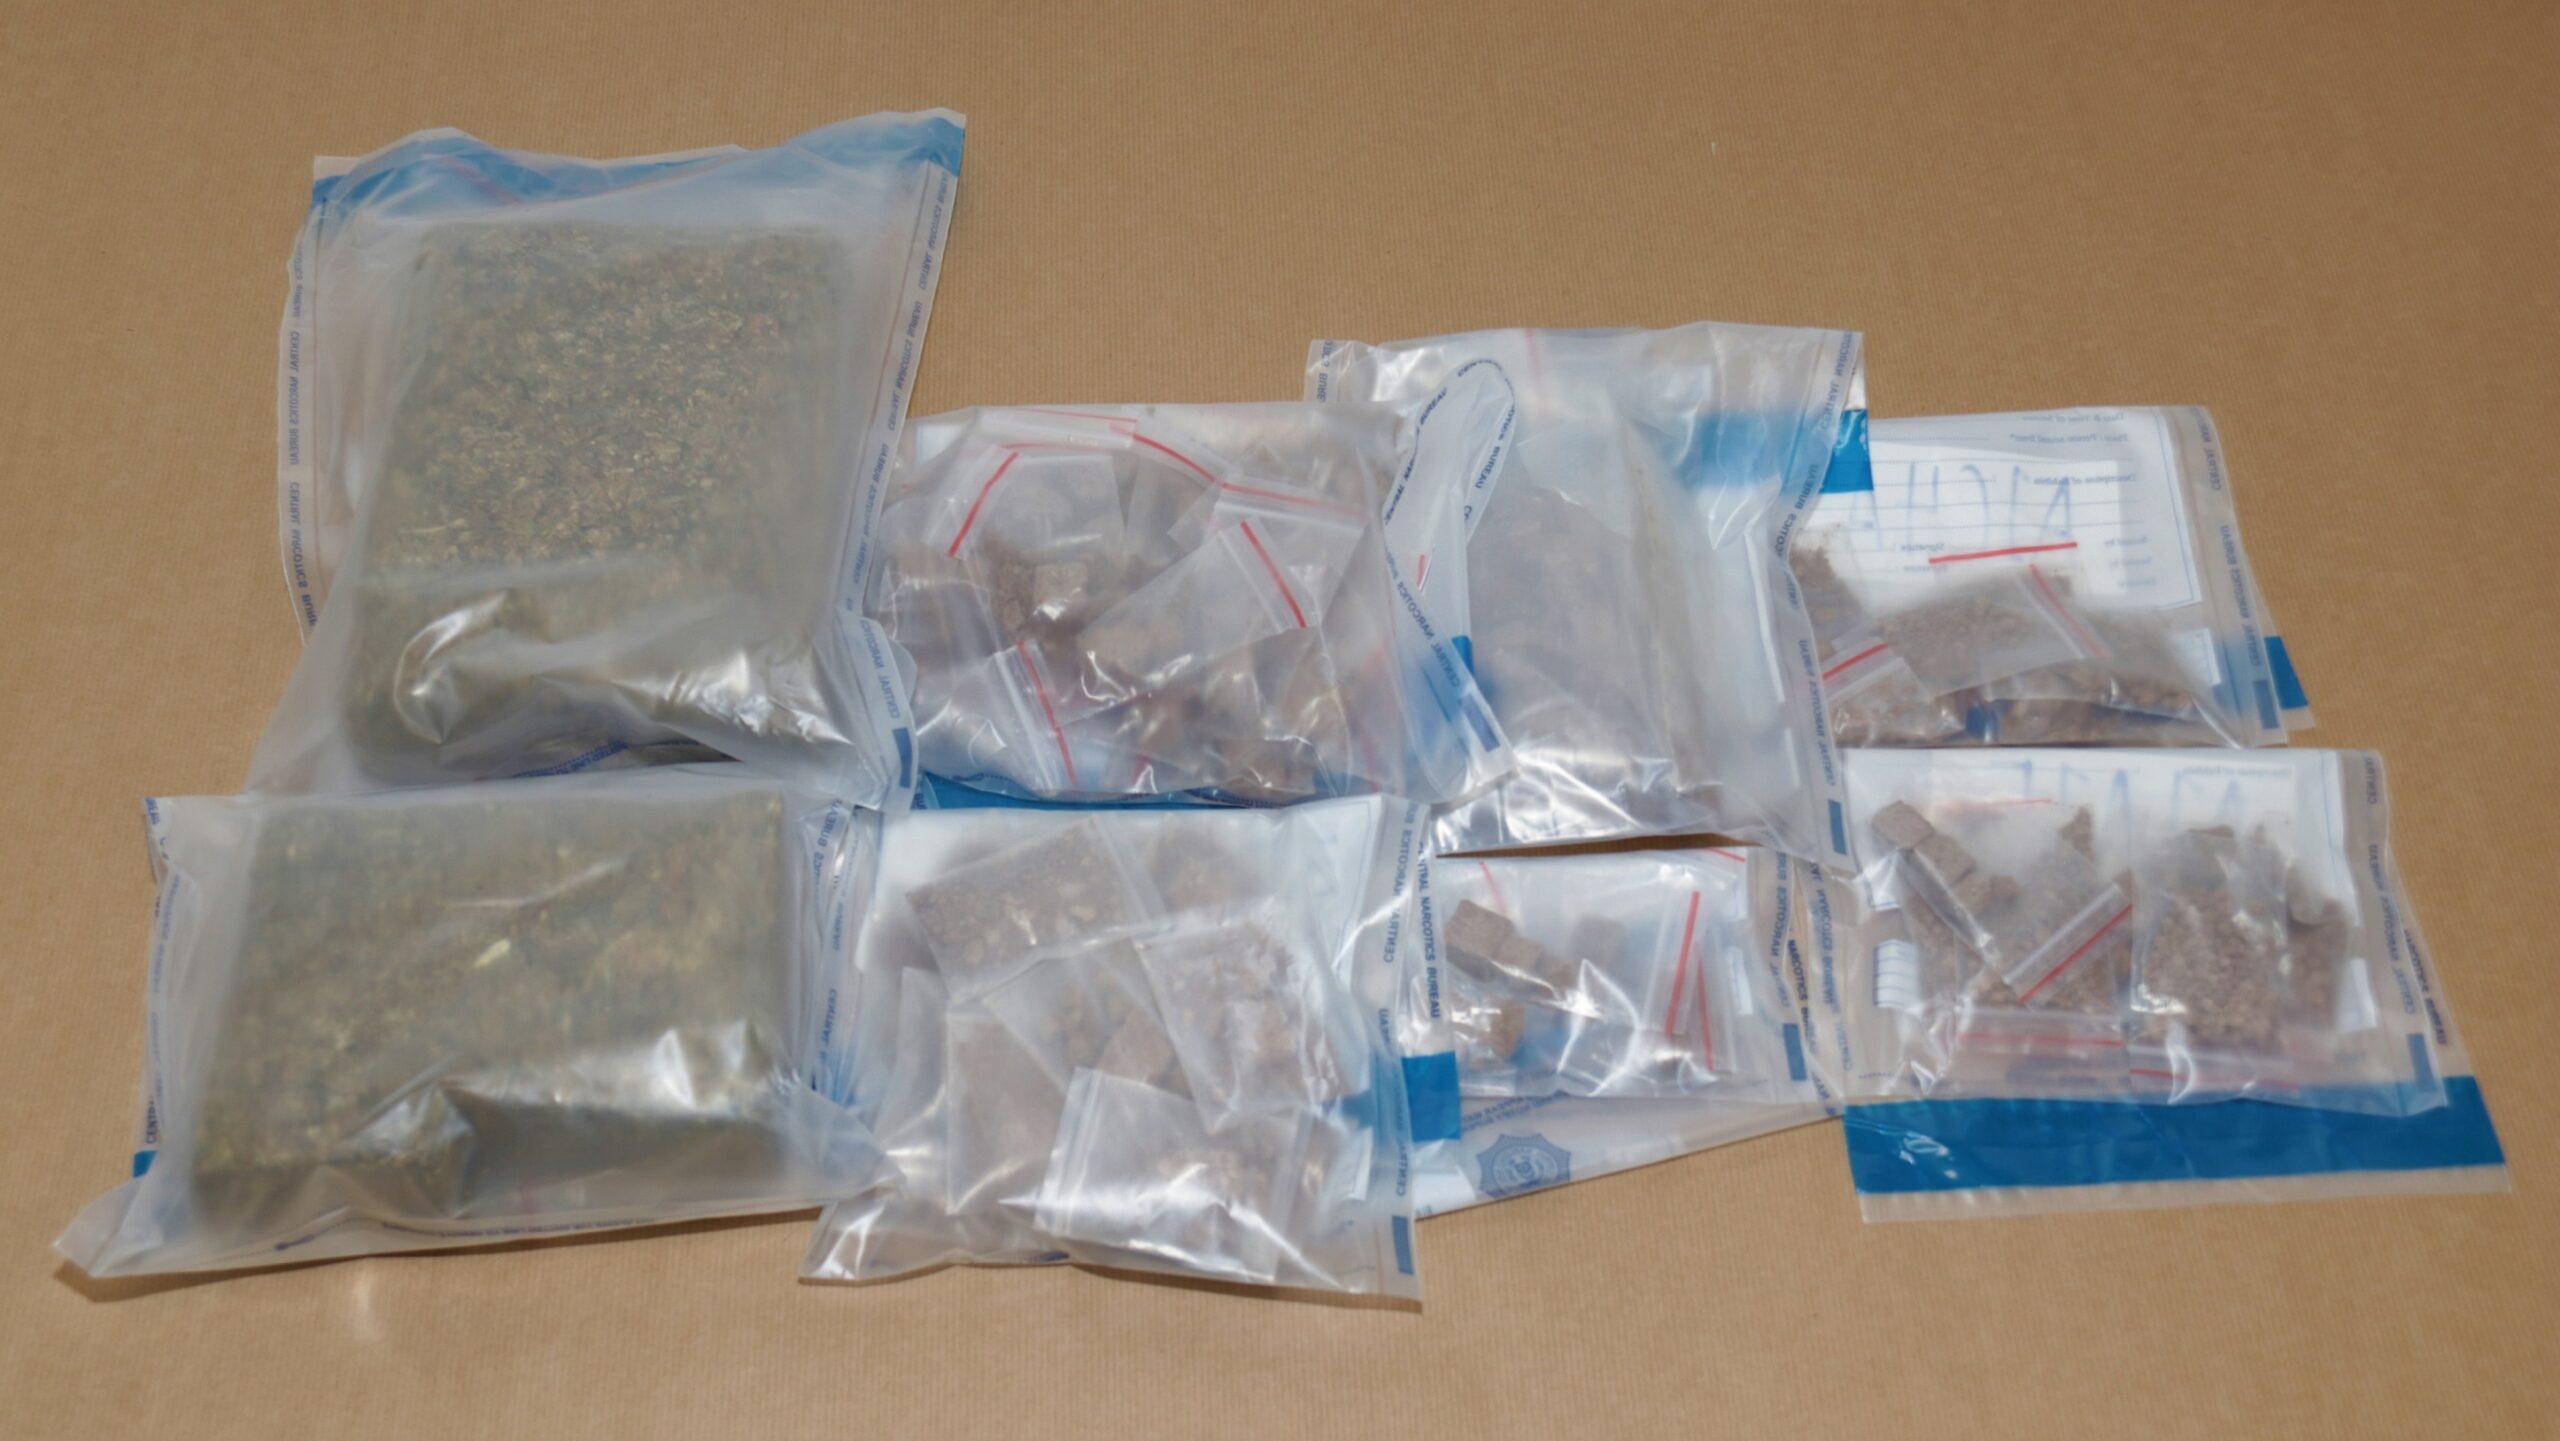 Singaporean authority seizes over 6.8 kg drugs